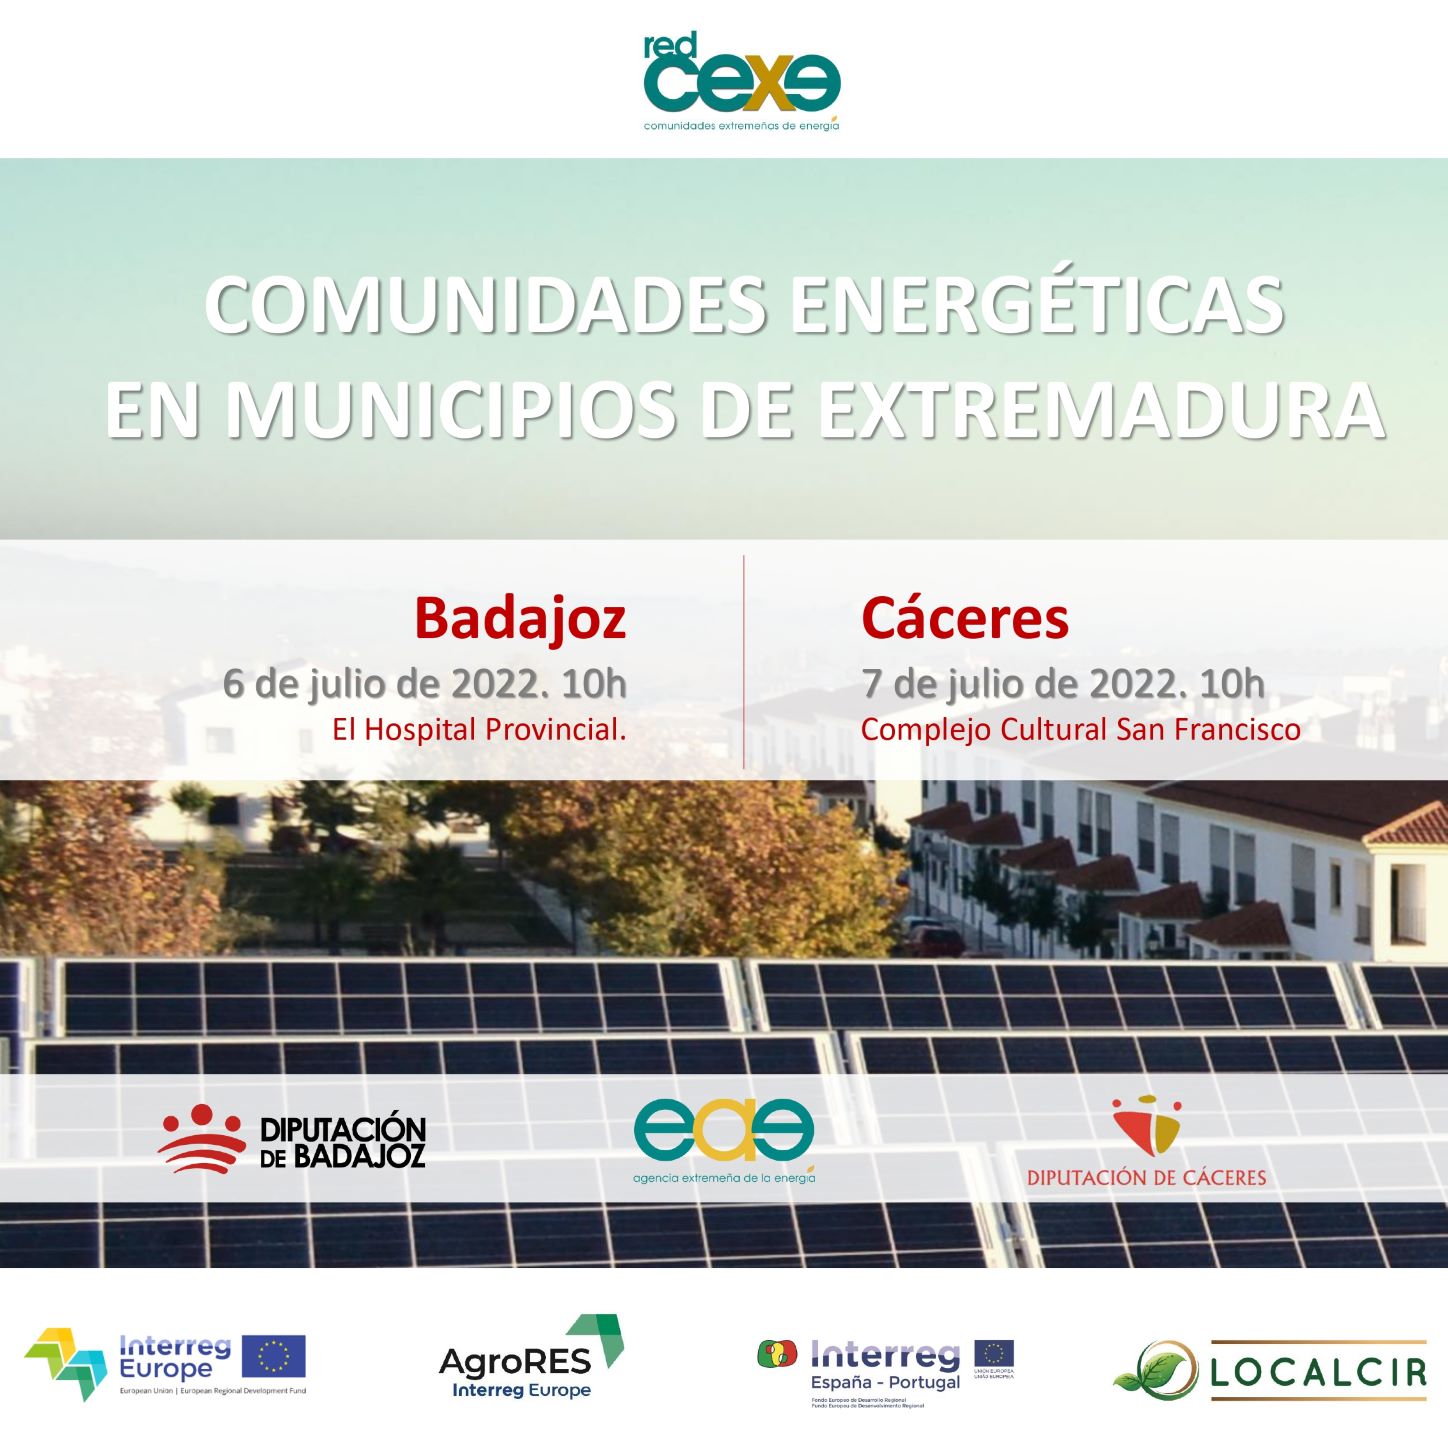 Energy Communities in Municipalities of Extremadura